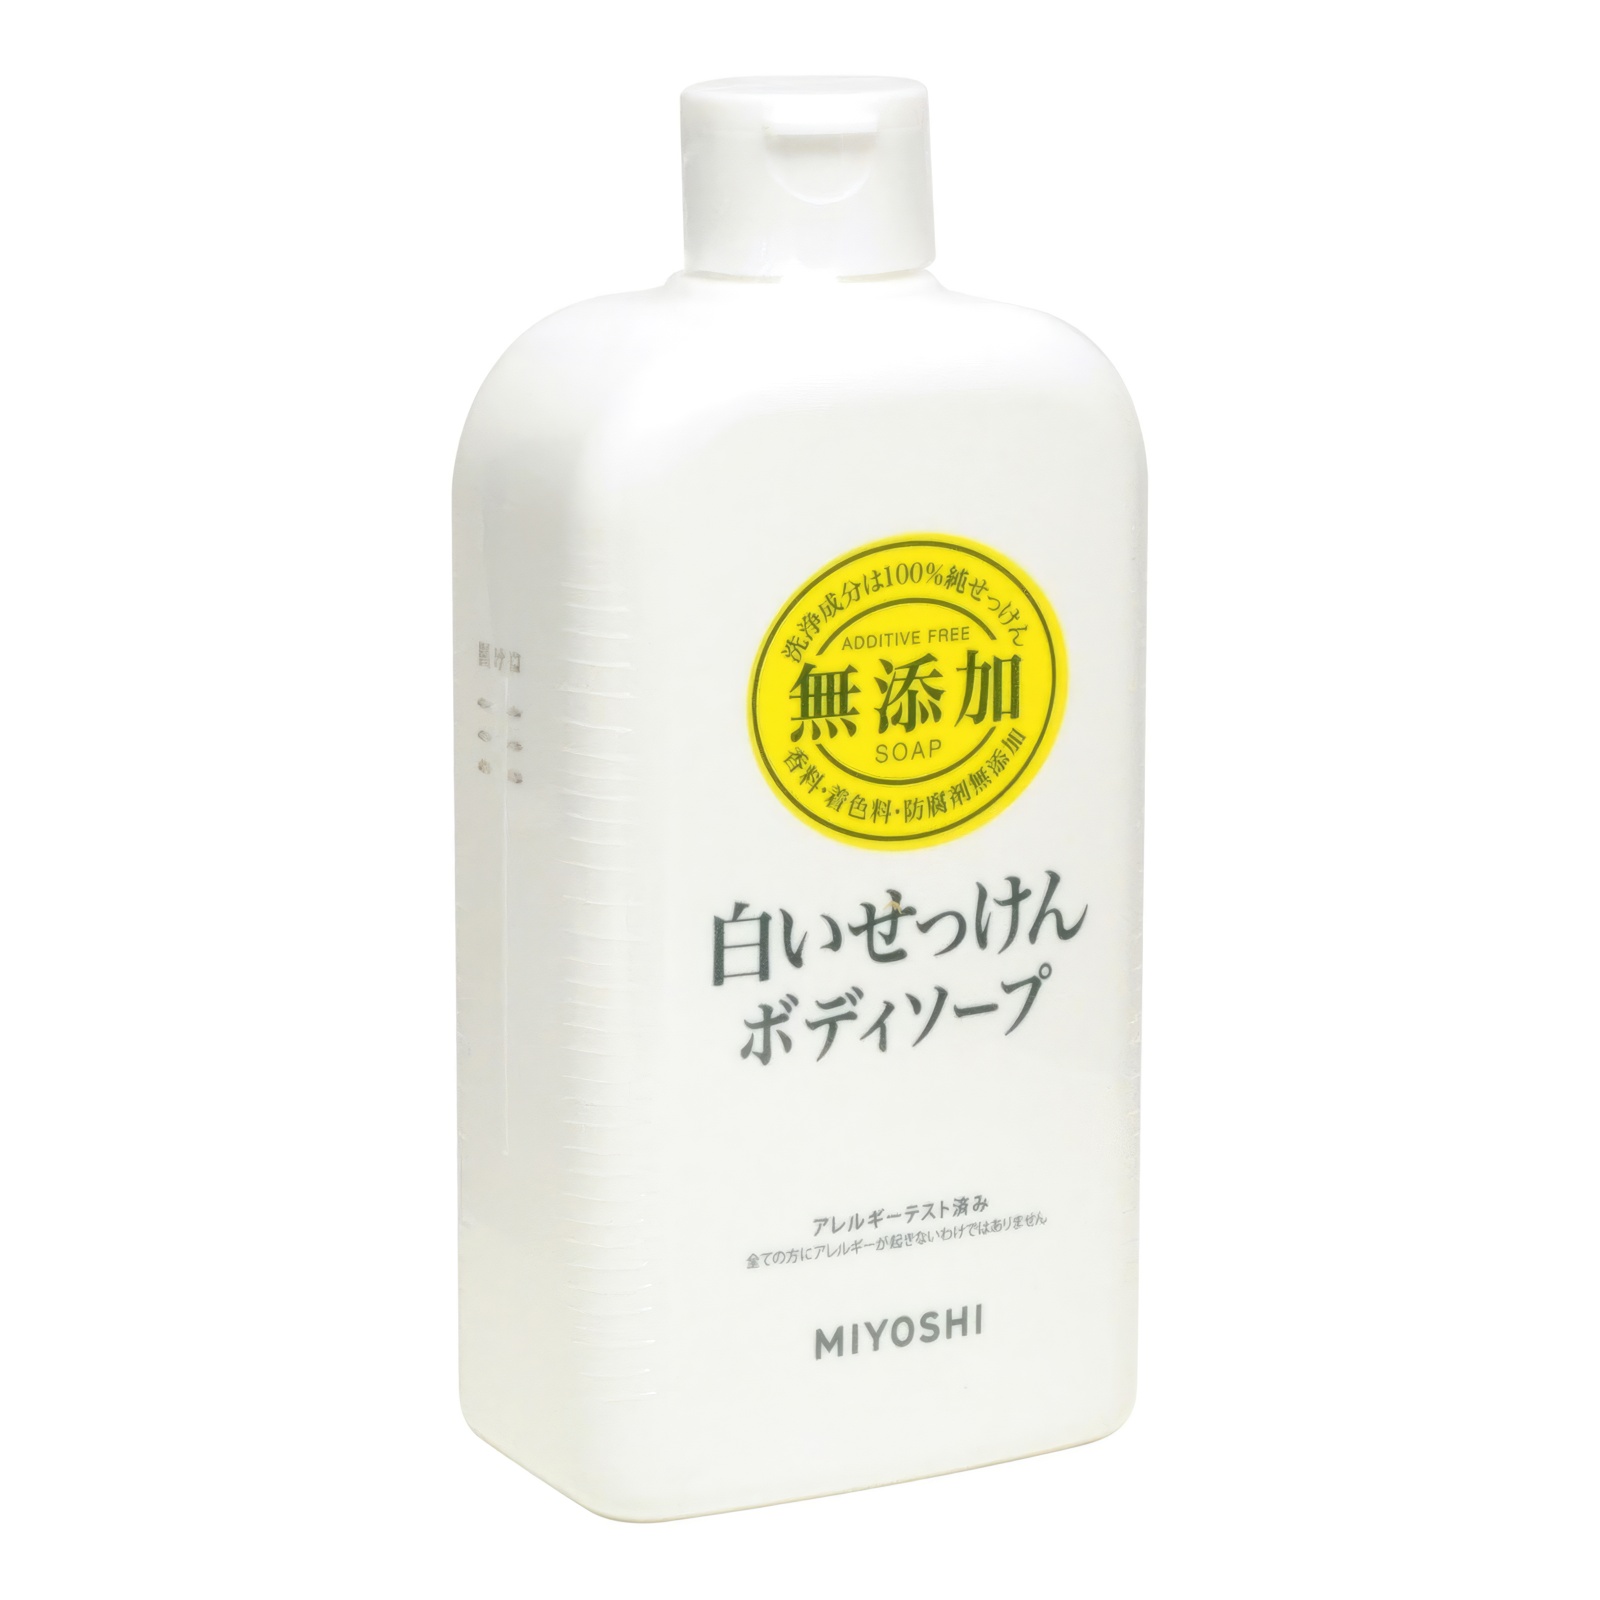 Натуральное жидкое гель-мыло MIYOSHI эко для тела 400 мл жидкое мыло для рук и тела synergetic ущий инжир и лотос натуральное 0 38л